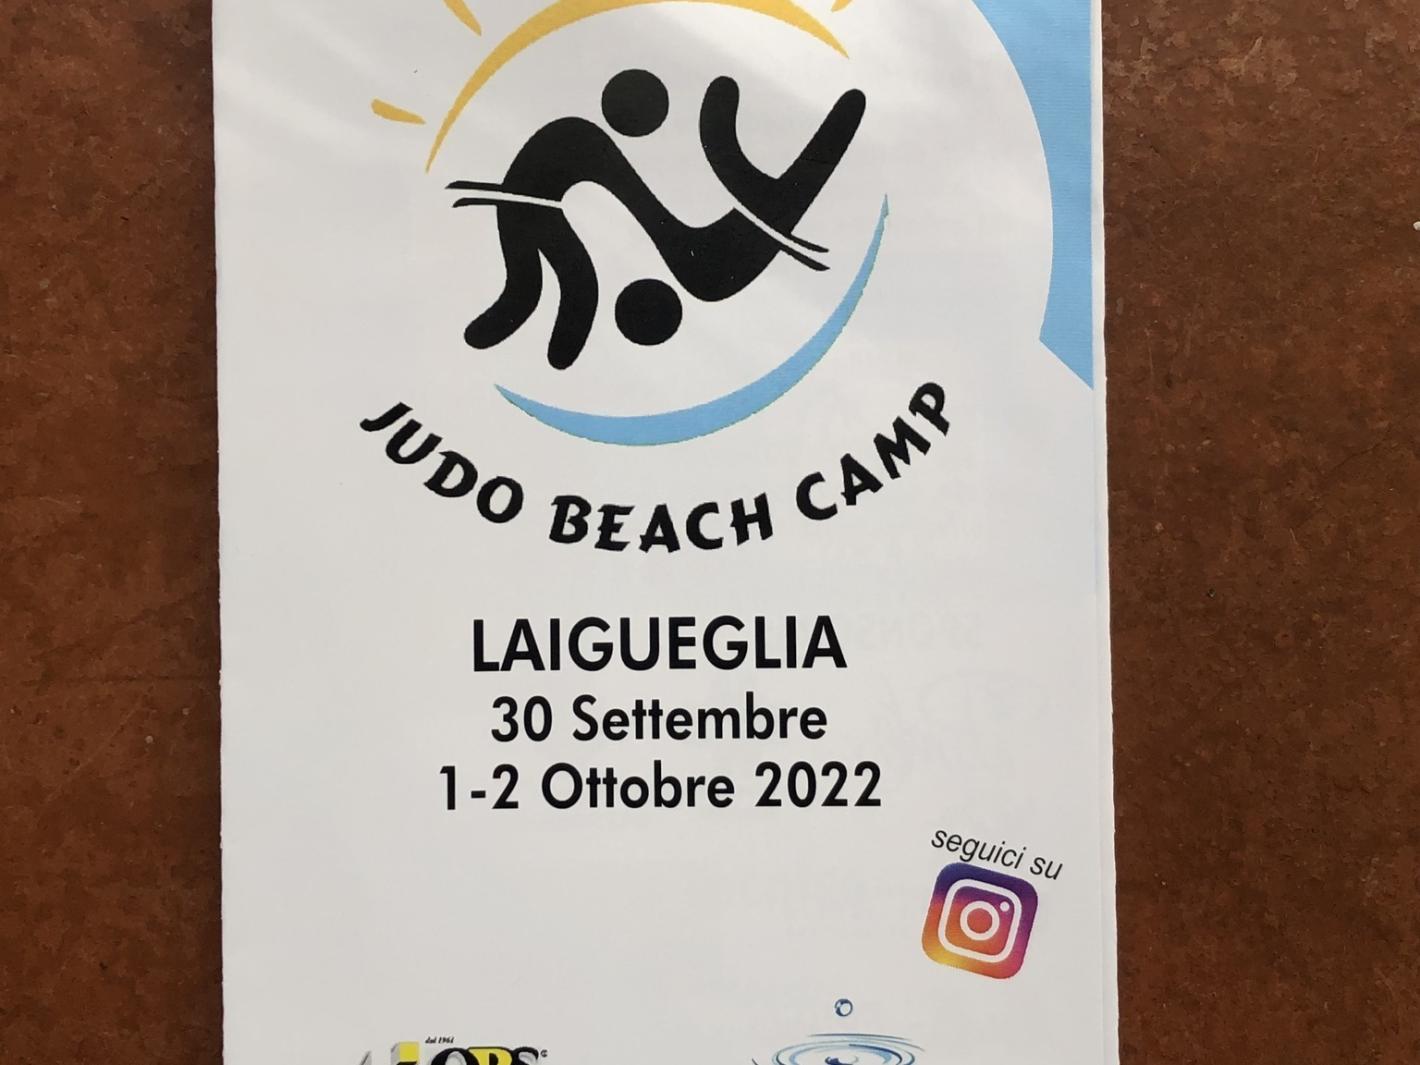 images/liguria/judo/medium/judo-beach-camp-laigueglia.jpeg